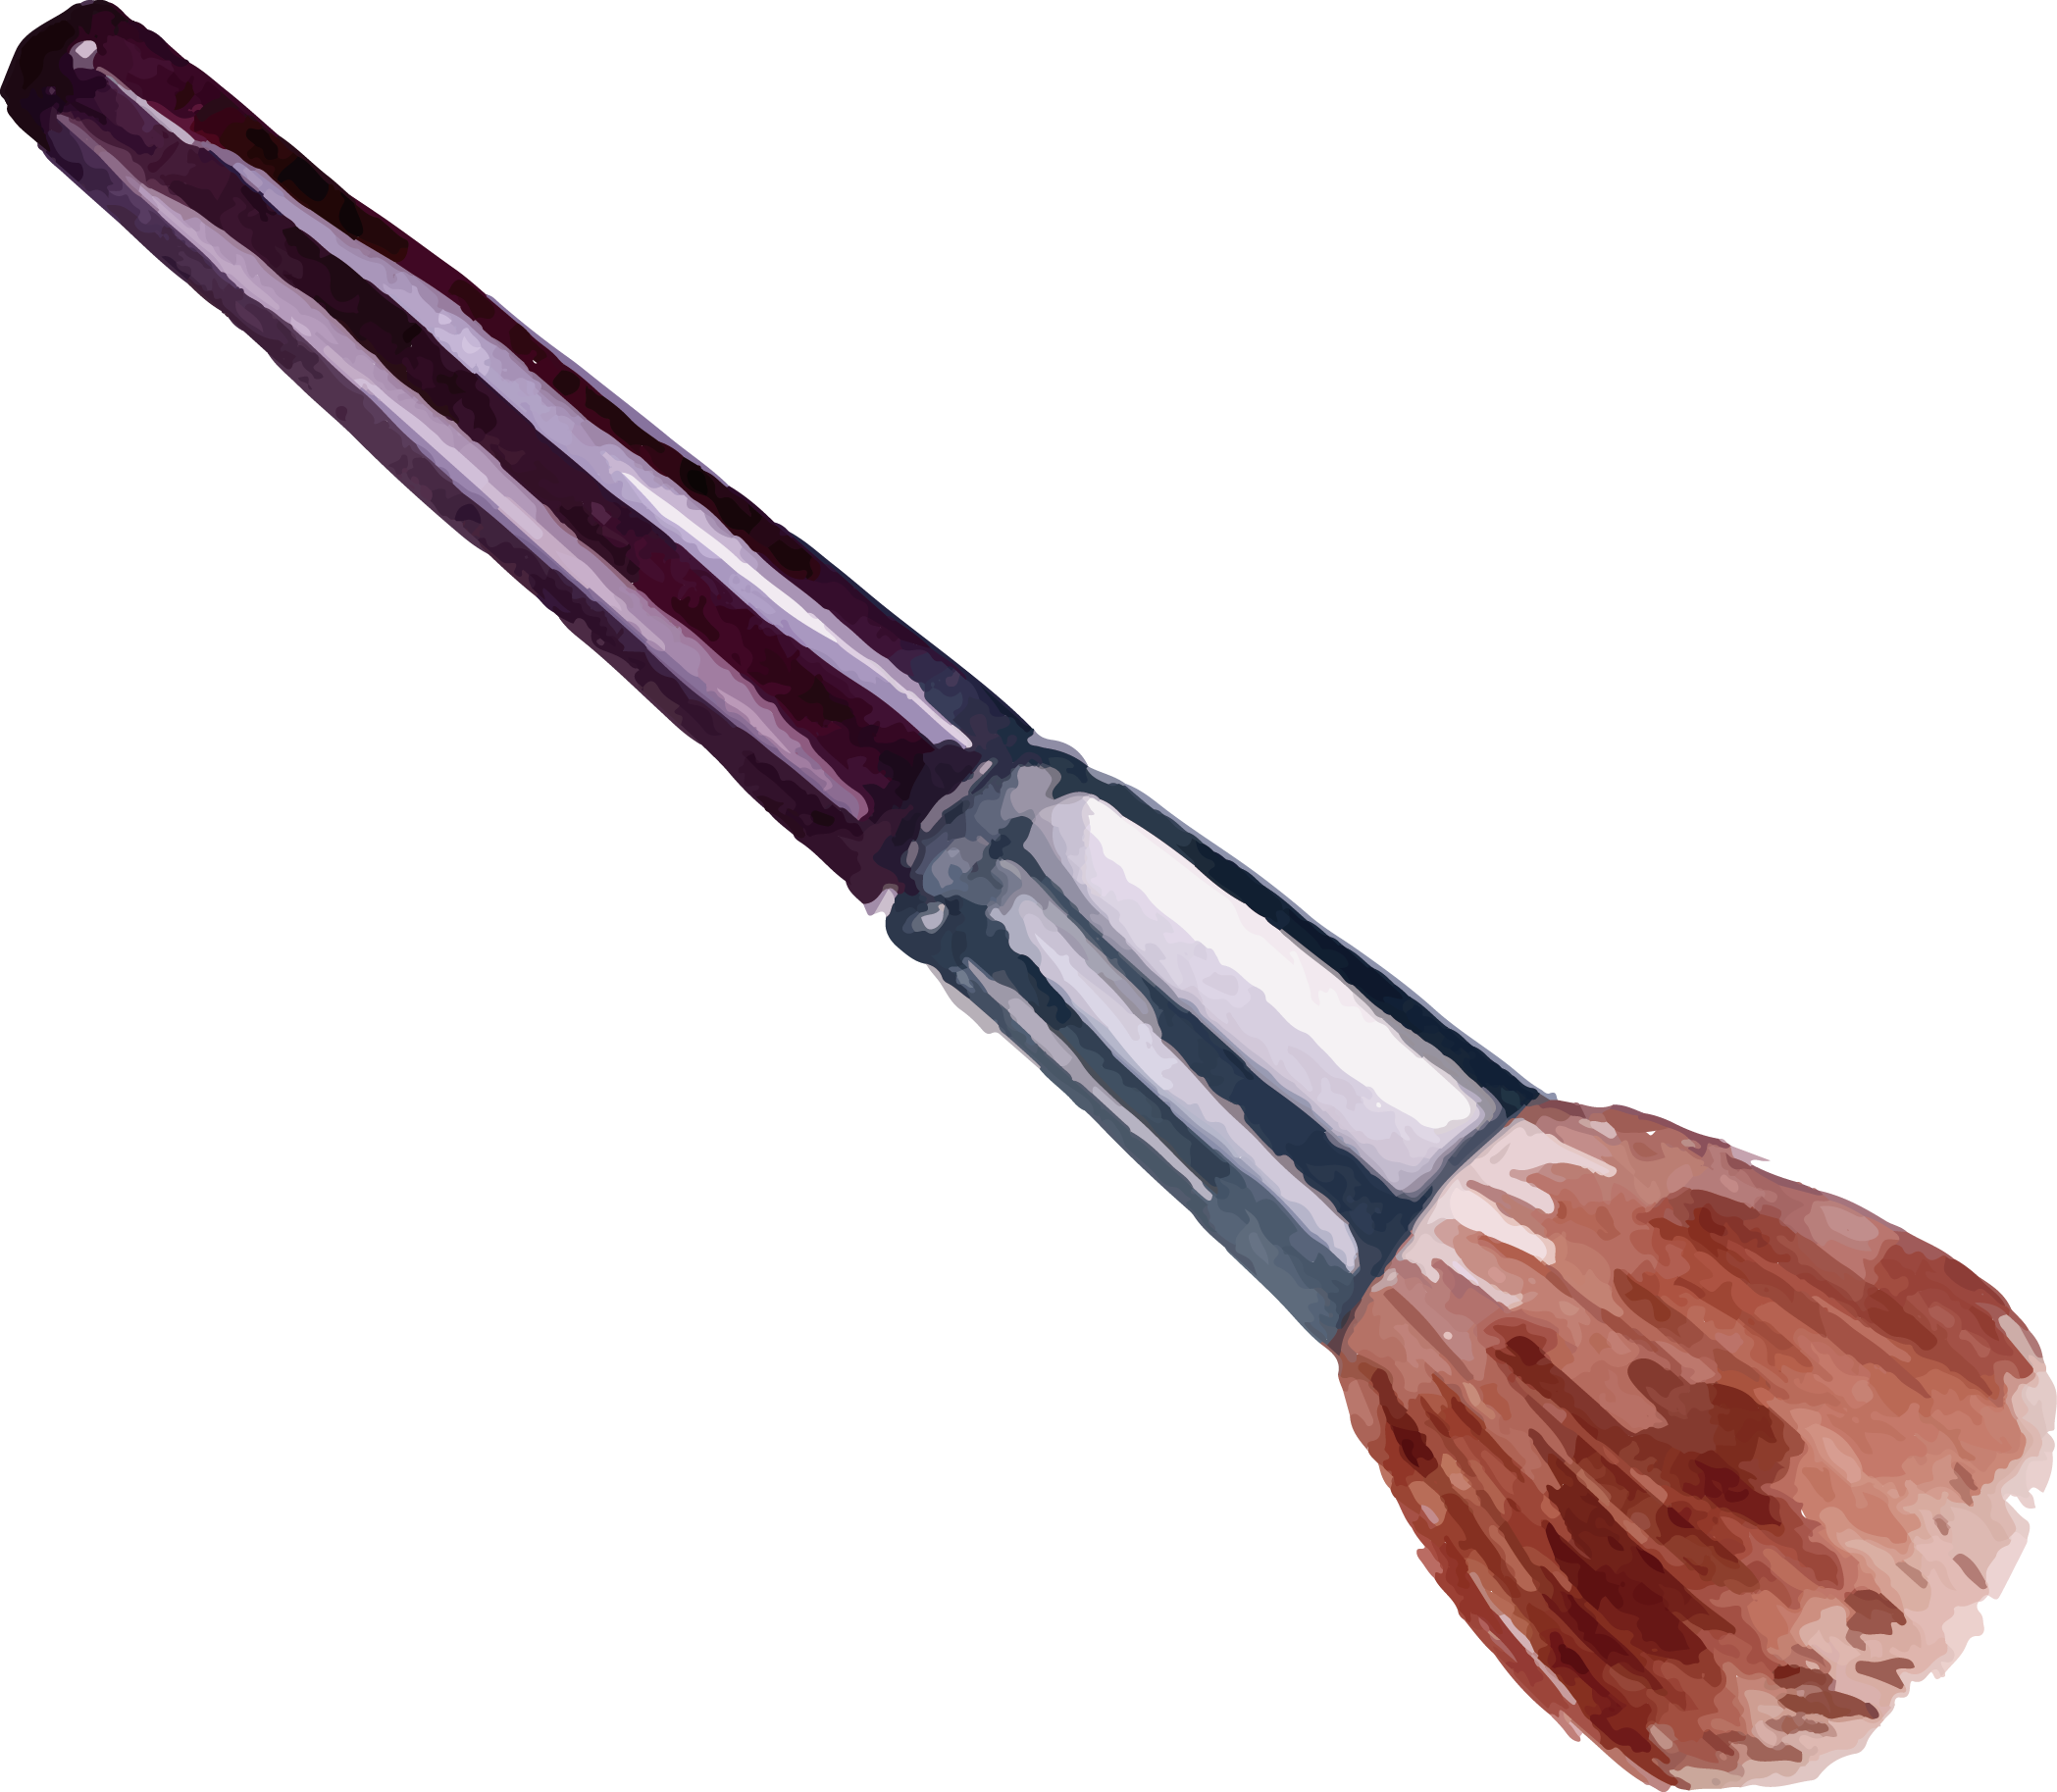 Makeup Brush Vector at GetDrawings Free download